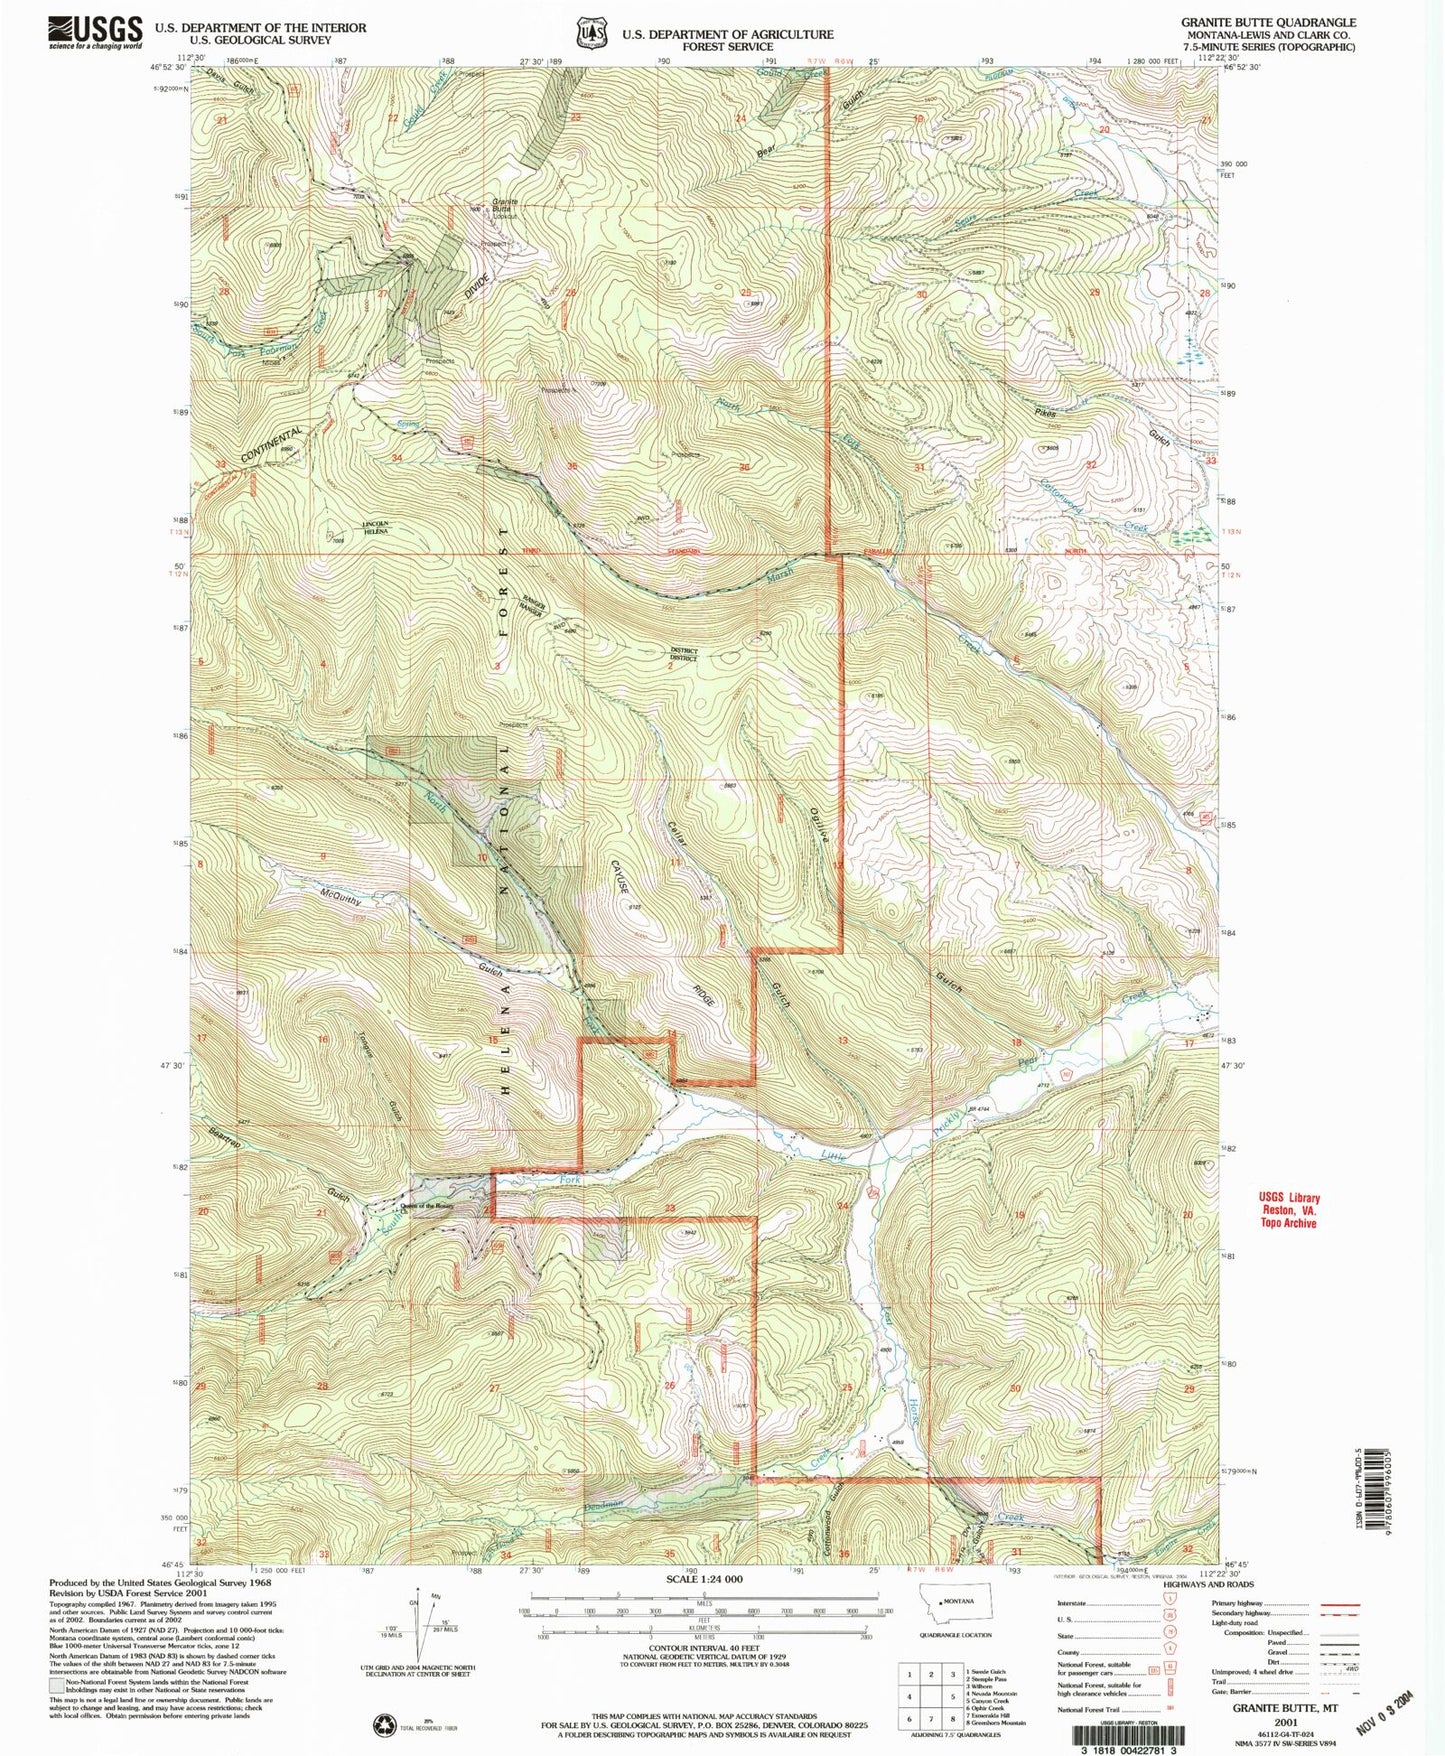 Classic USGS Granite Butte Montana 7.5'x7.5' Topo Map Image